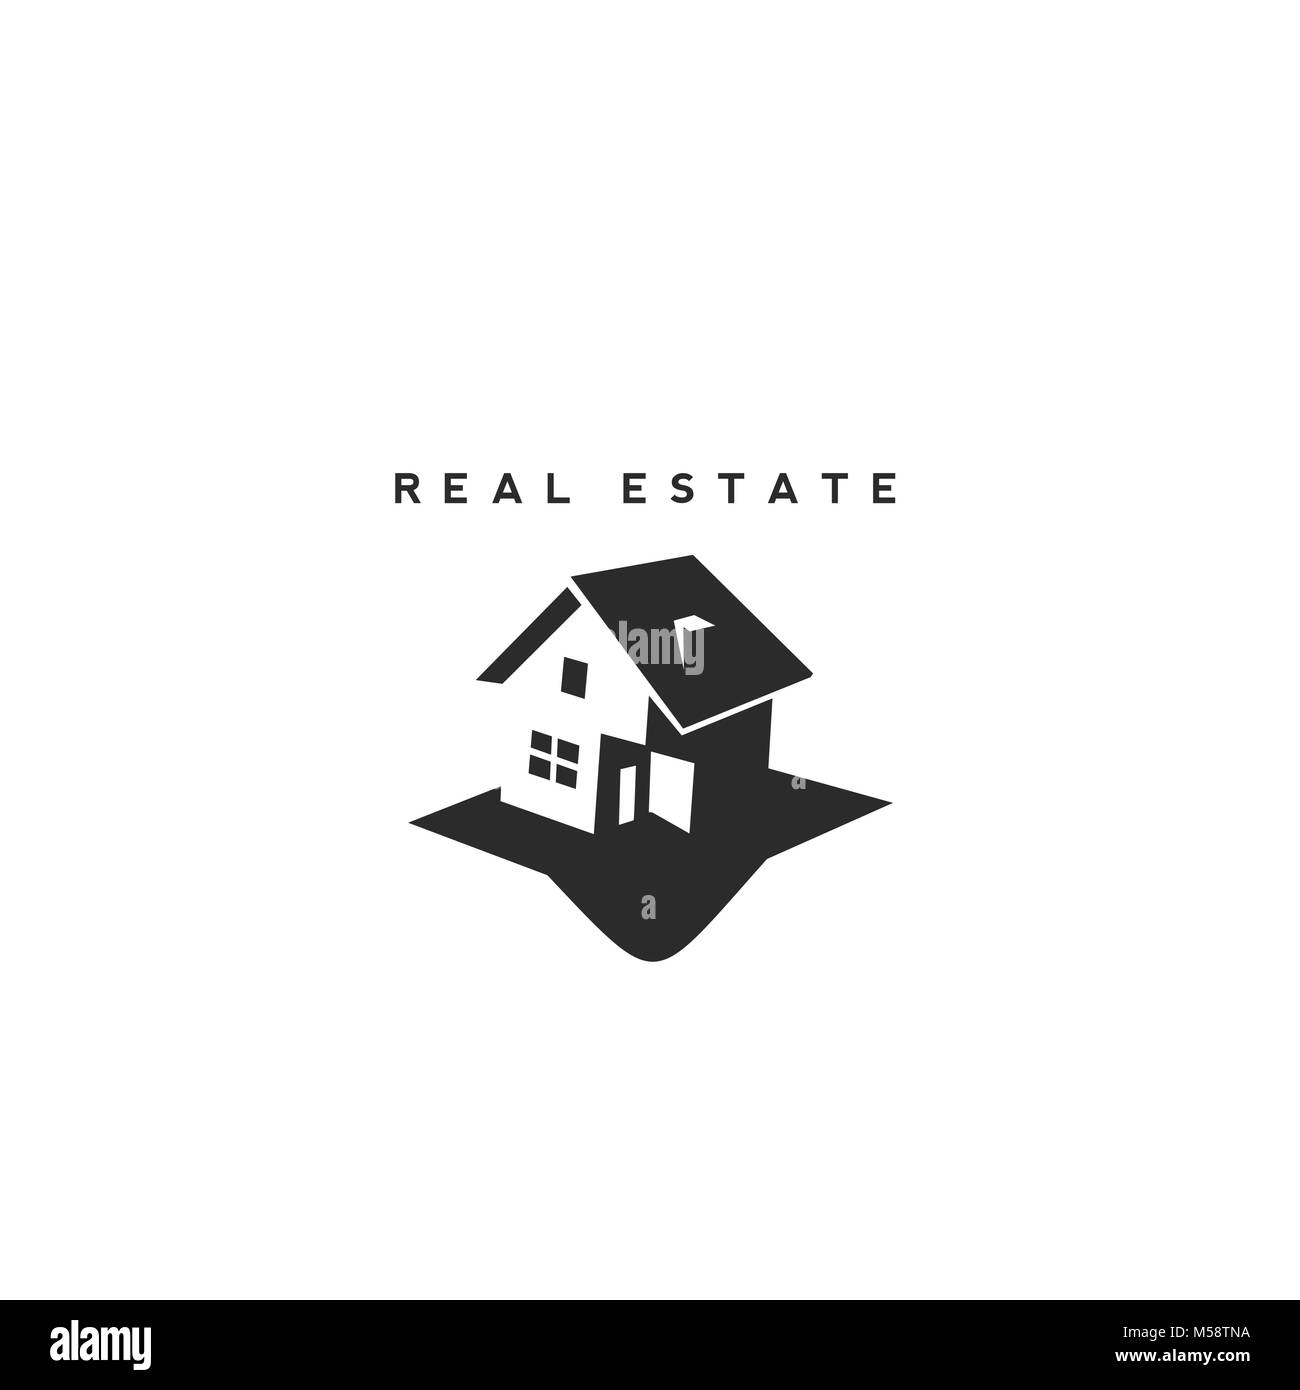 Real Estate vector logo design template. Stock Vector